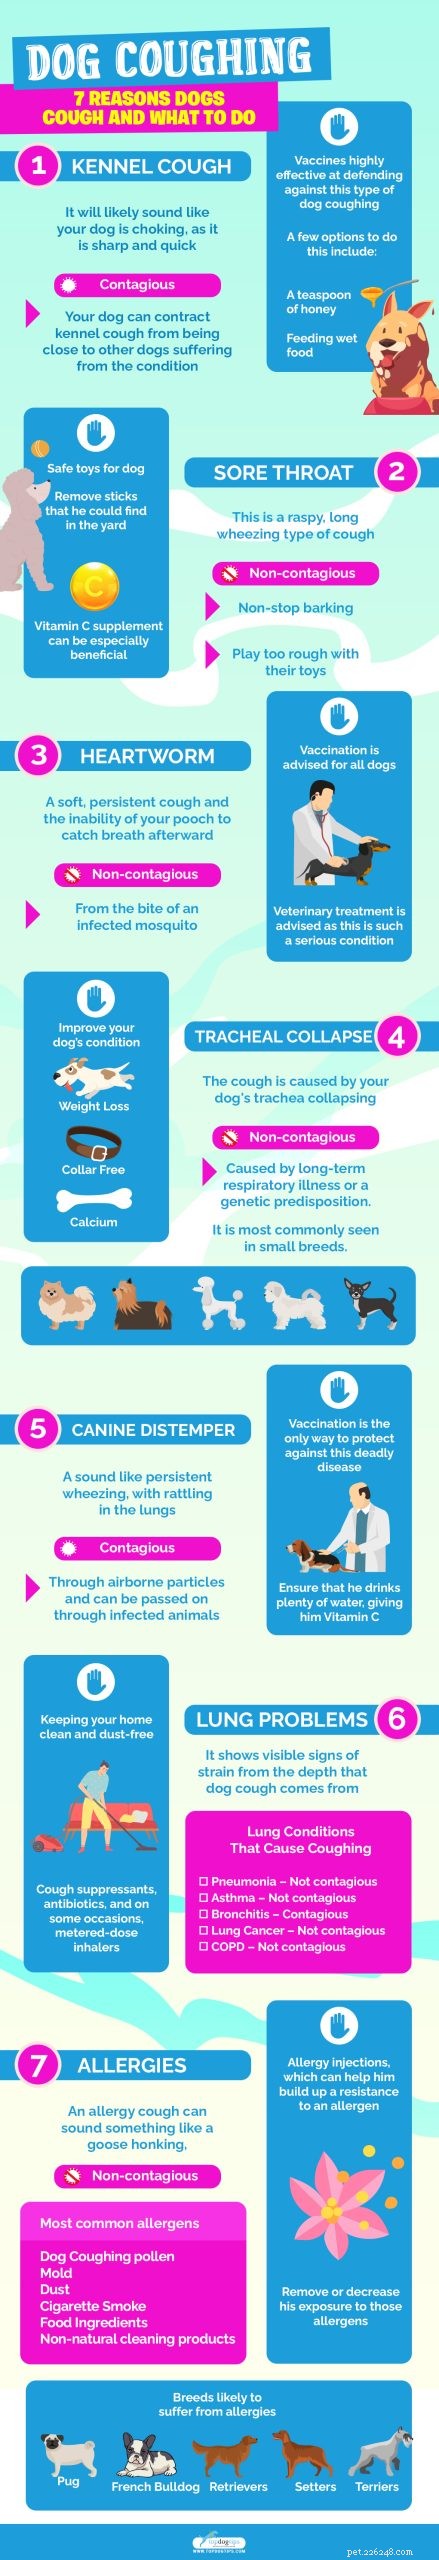 Honden hoesten:7 redenen waarom honden hoesten en wat ze moeten doen